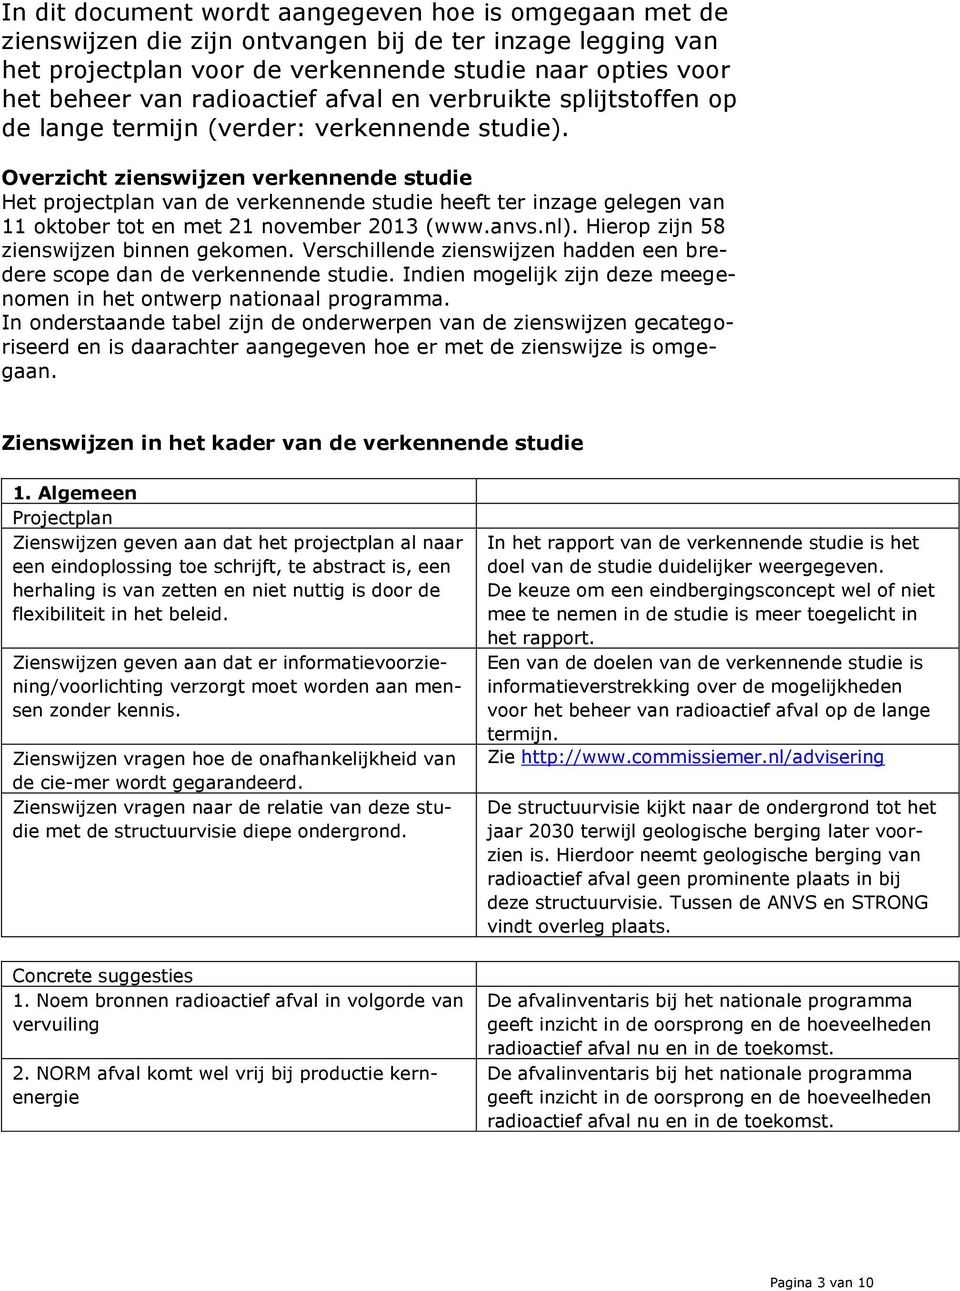 Overzicht zienswijzen verkennende studie Het projectplan van de verkennende studie heeft ter inzage gelegen van 11 oktober tot en met 21 november 2013 (www.anvs.nl).